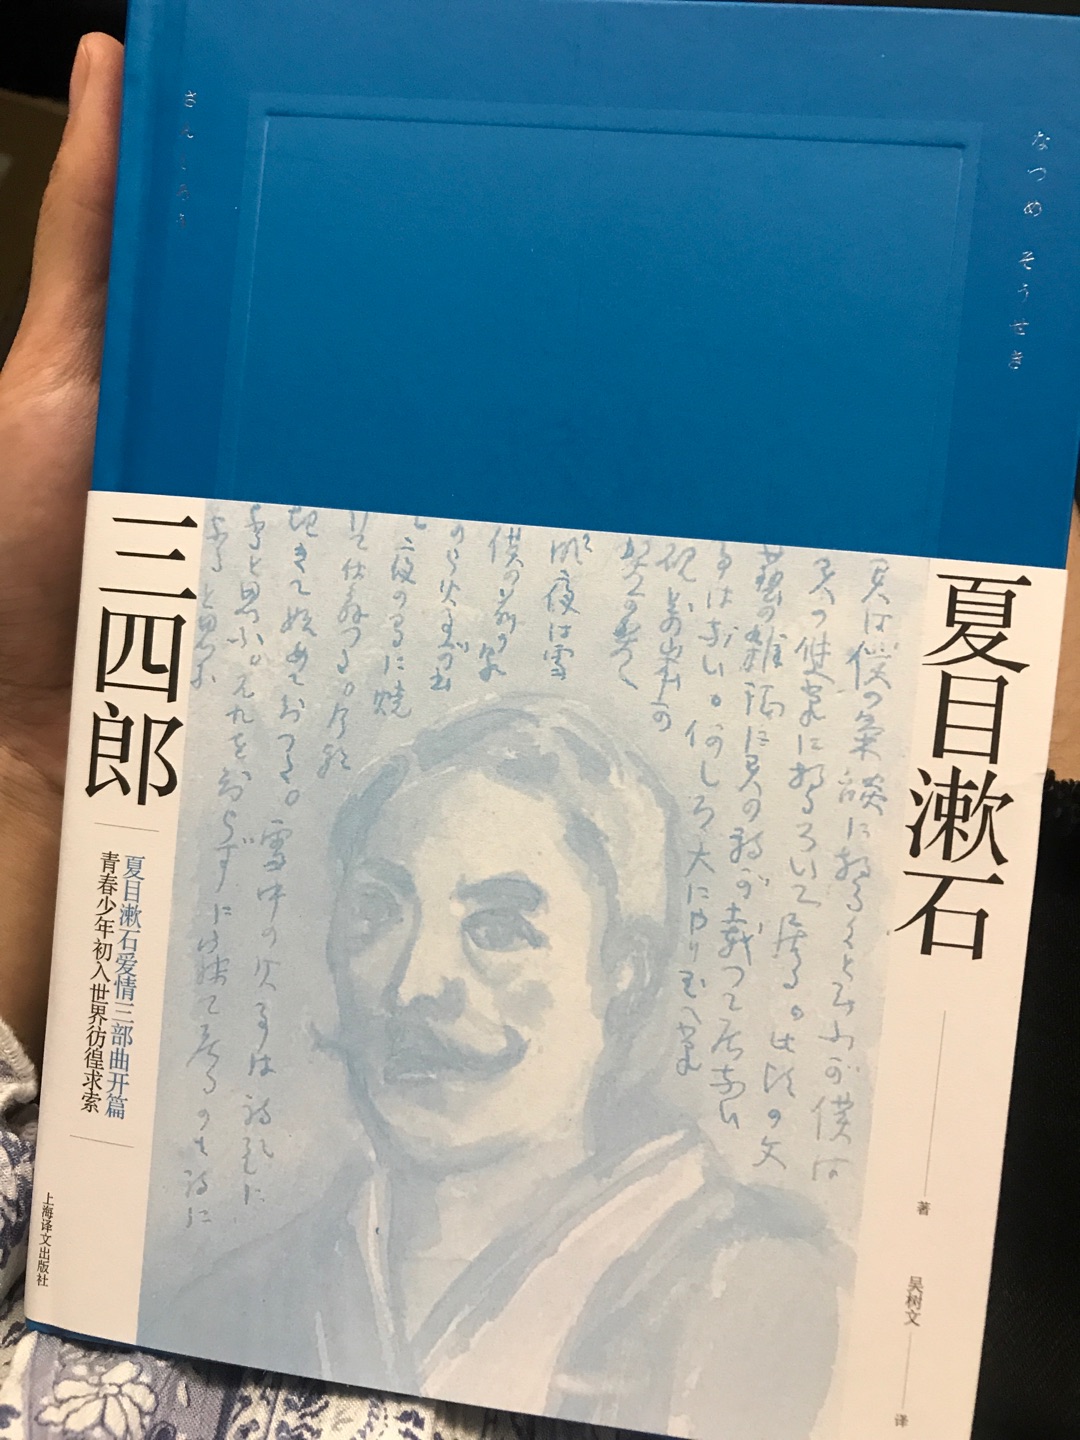 终于出新版啦 支持译文 支持夏目漱石(￣ω￣;)